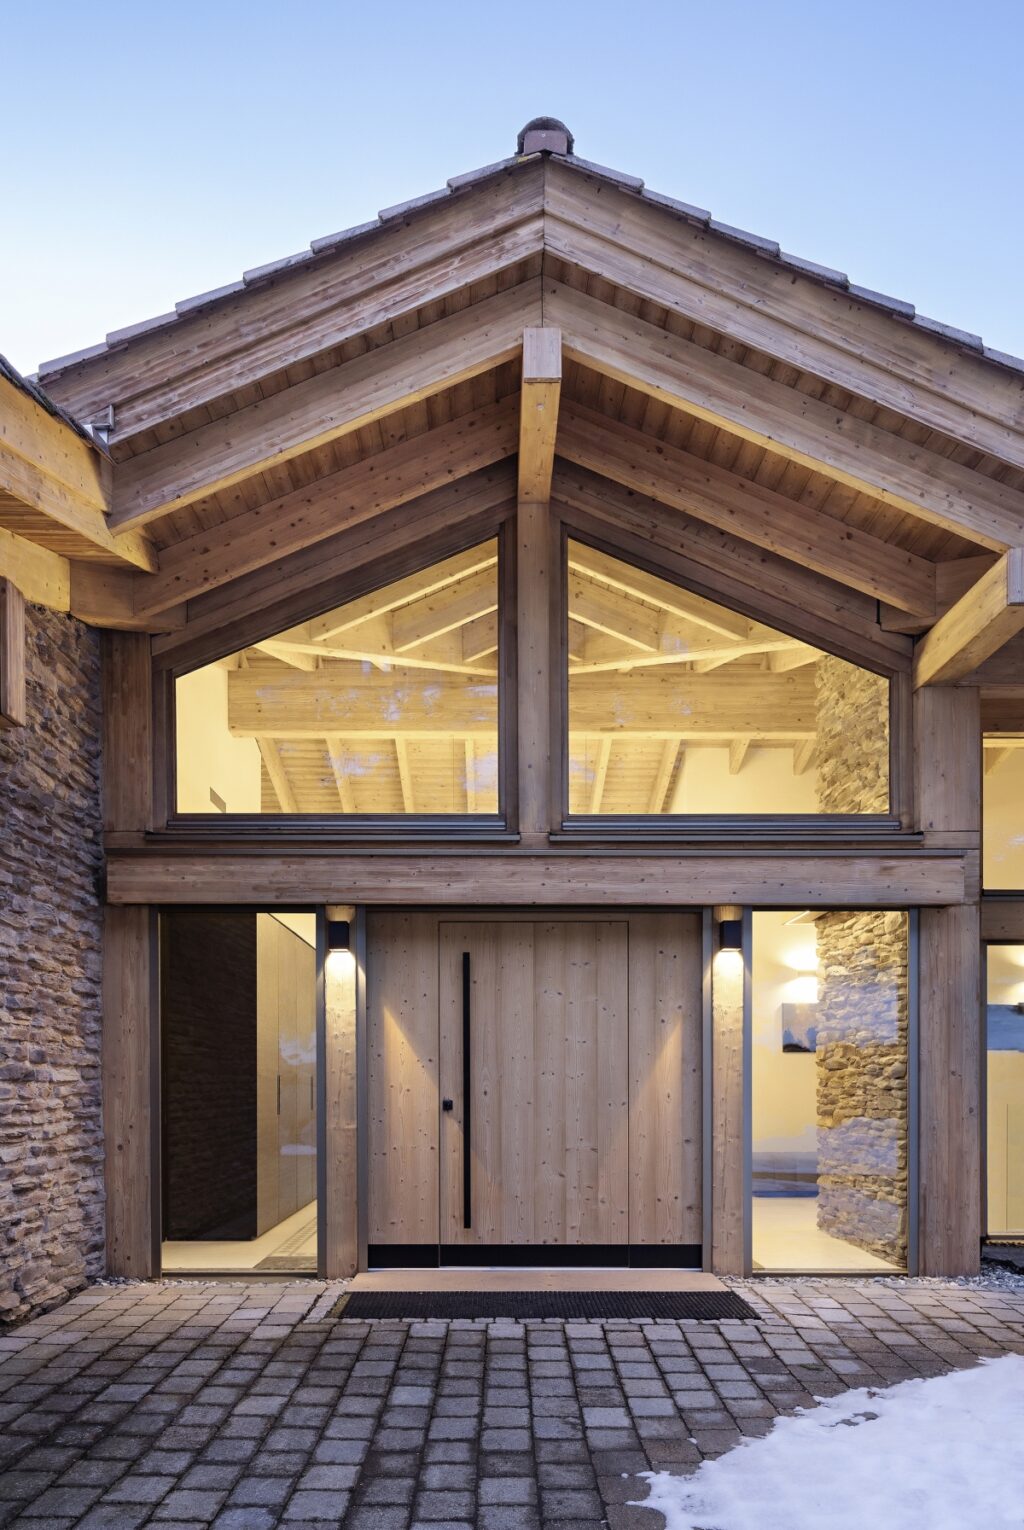 Chalet D uma estrutura de madeira, pedra e metal para um minimalismo orgânico. arquitetura e design de minivan